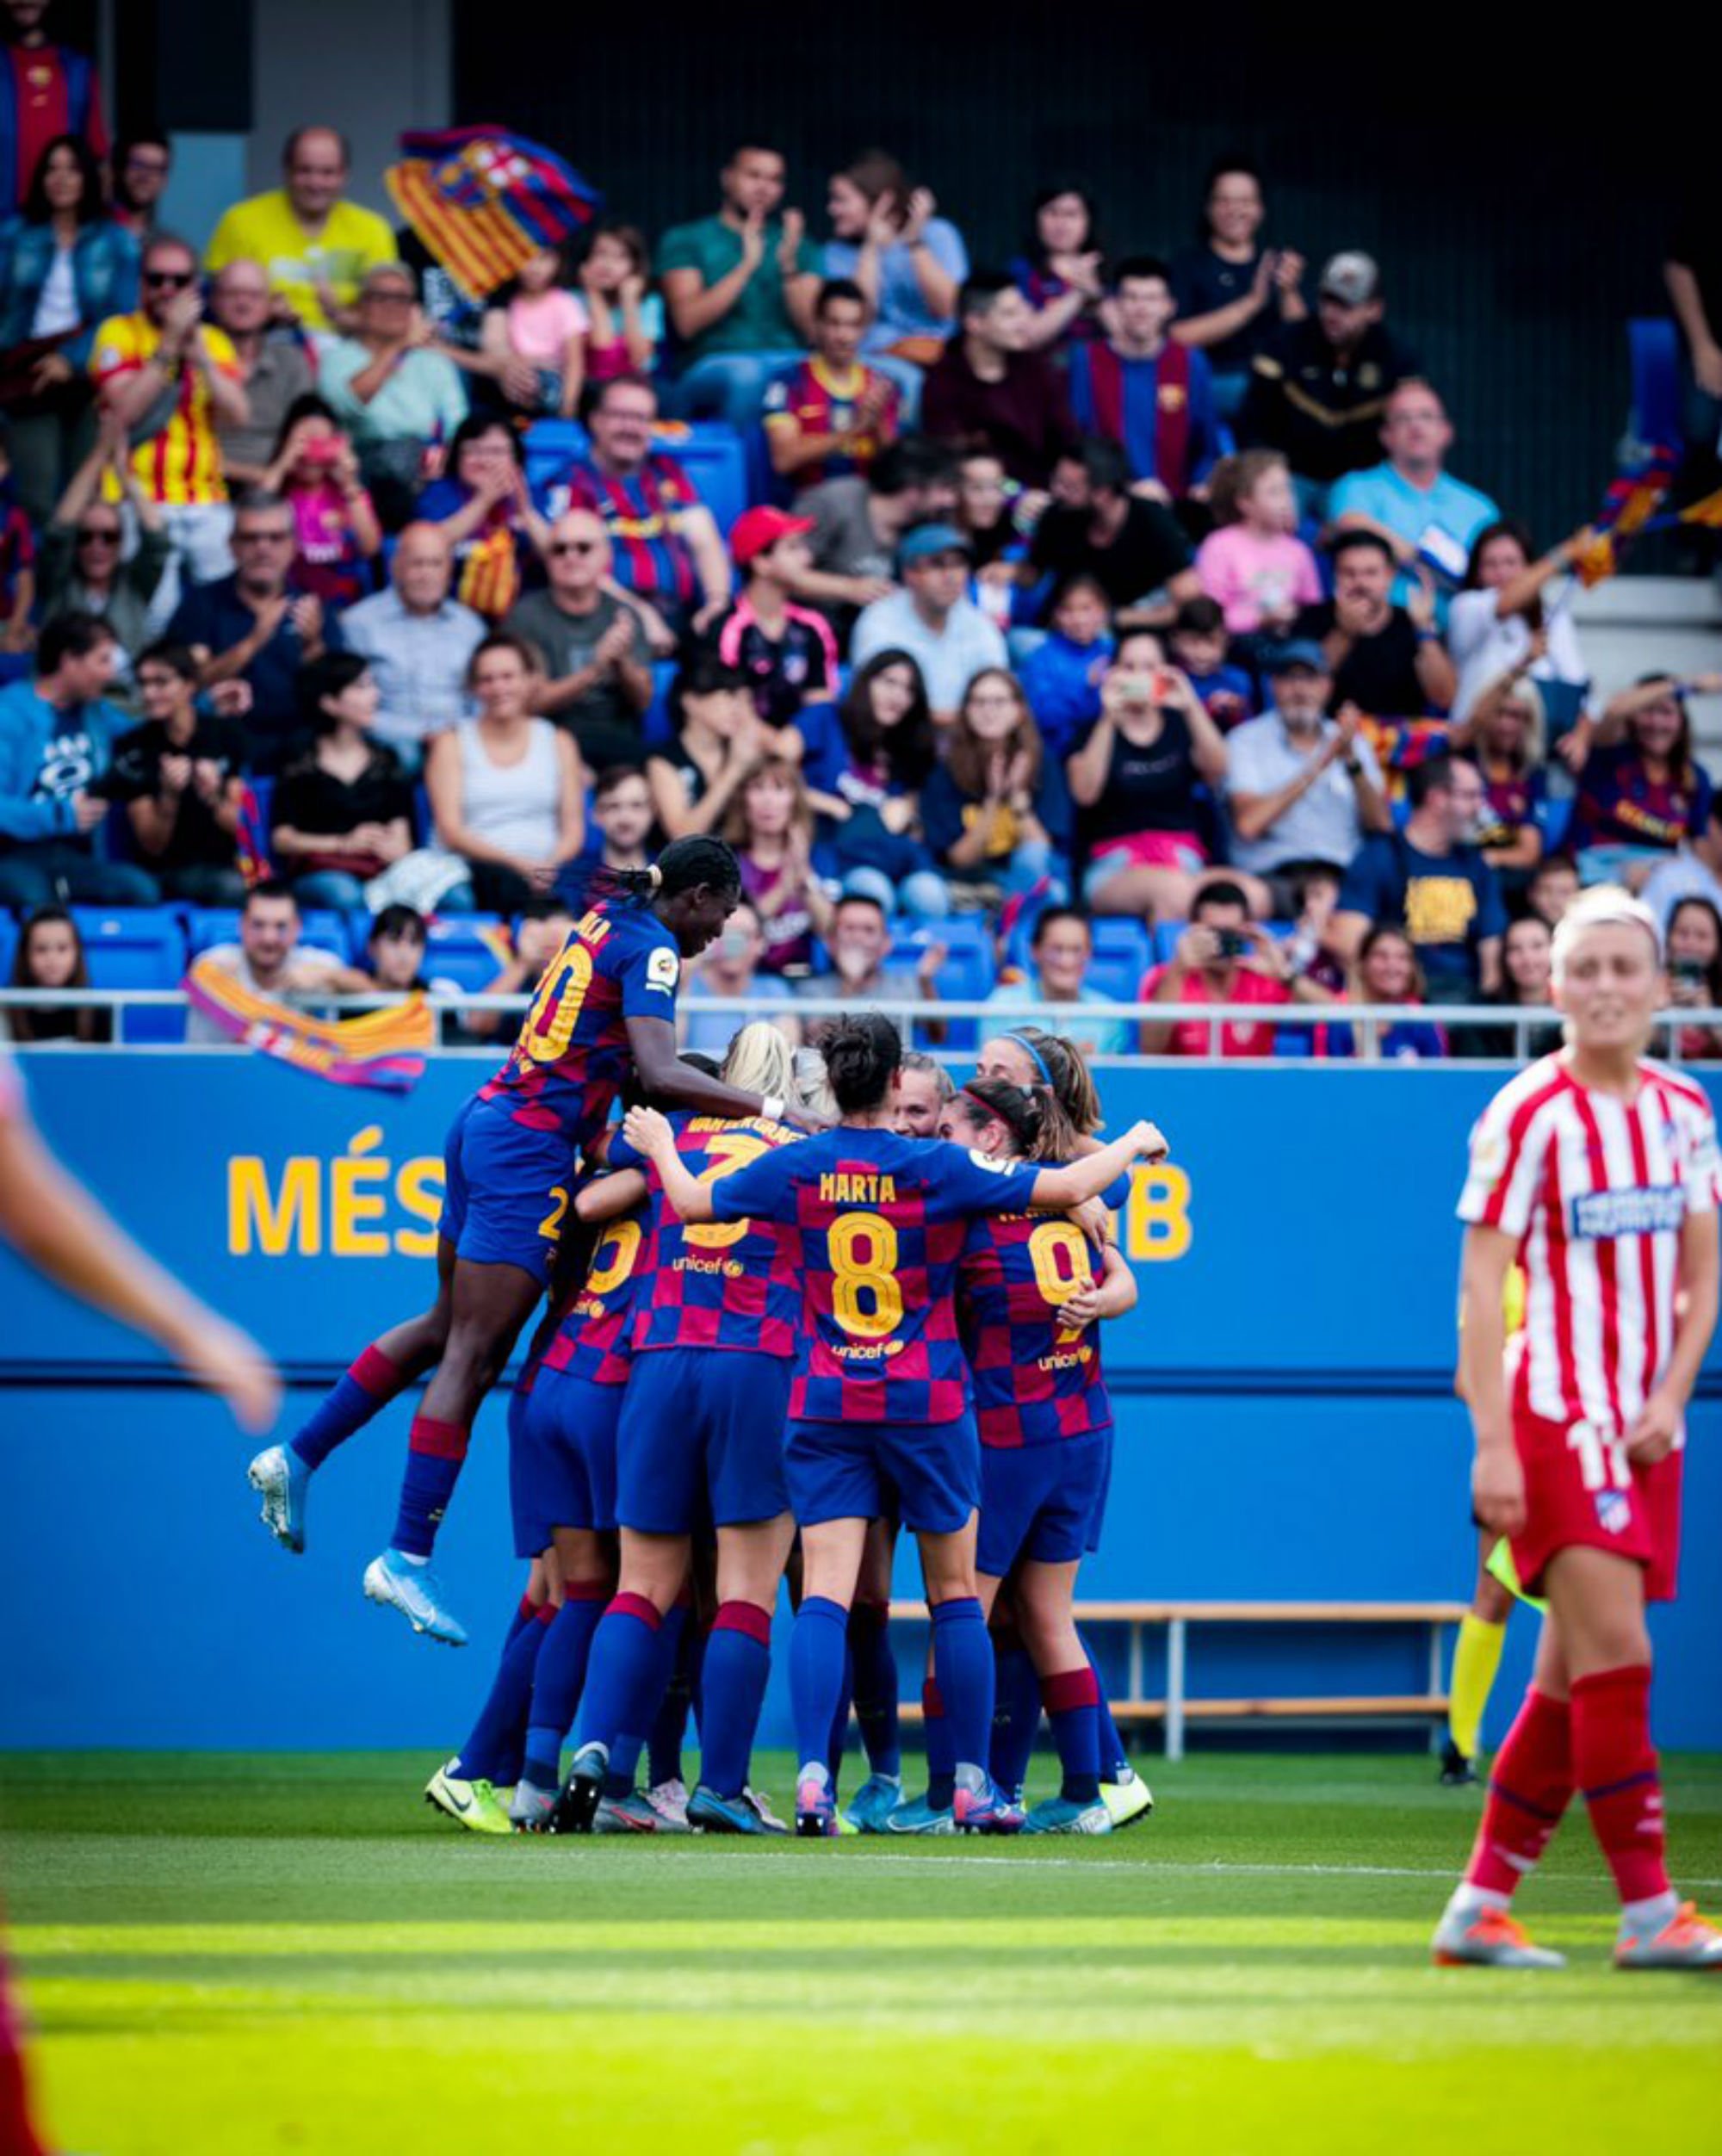 El Barça contraataca a la amenaza: "Tenemos que dar la máxima visibilidad al fútbol femenino"